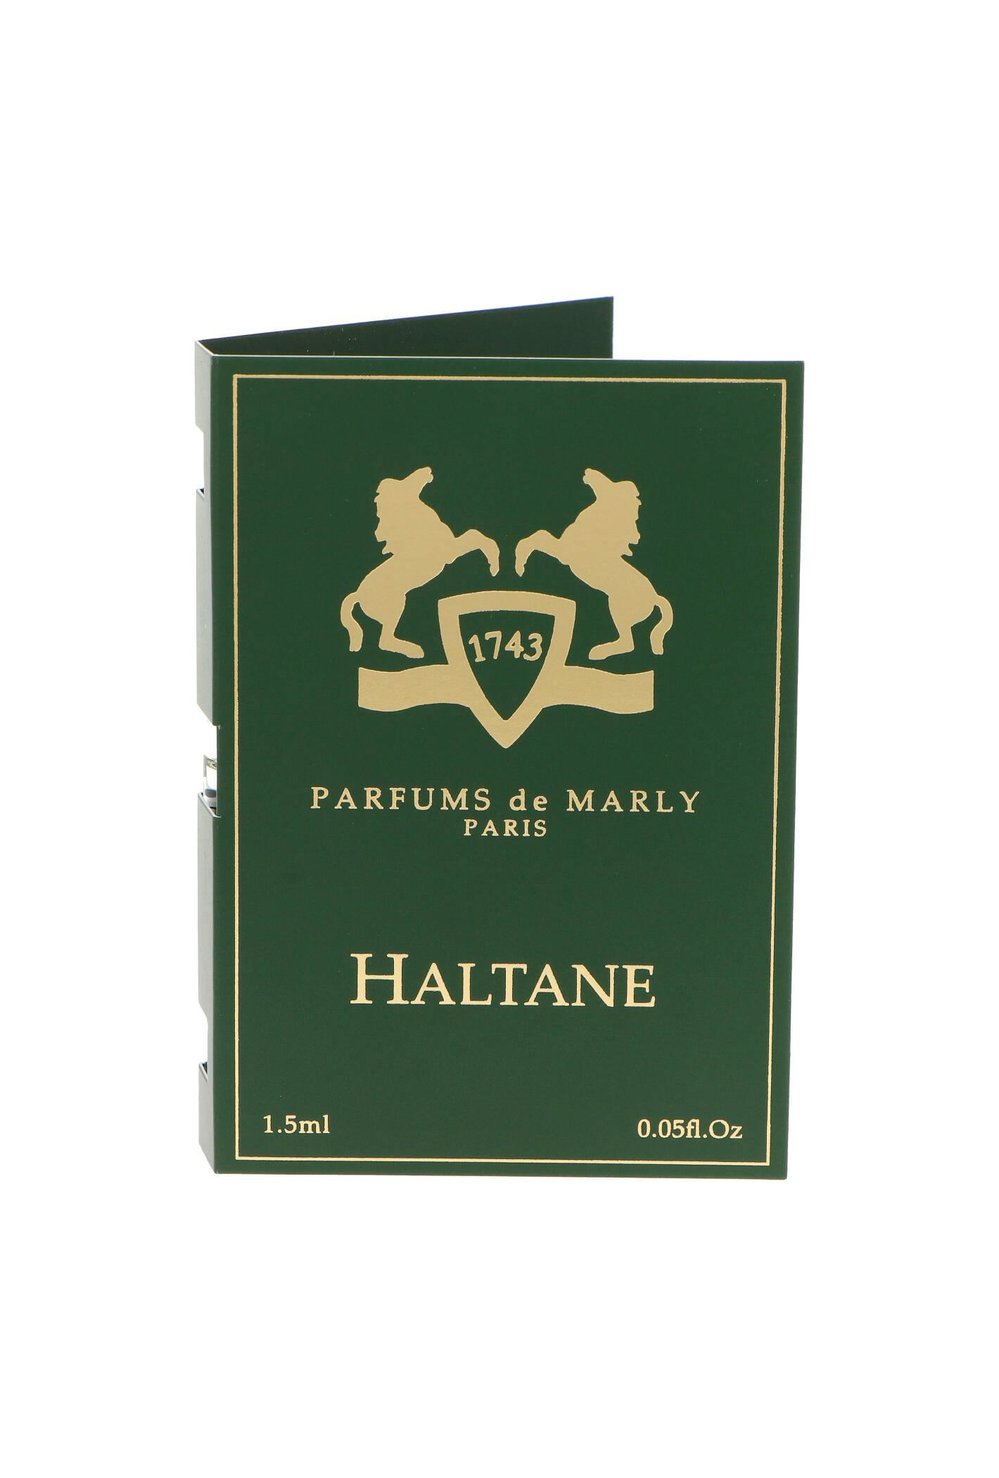 Parfums De Marly Haltane oficiálny vzorka parfému 1.5ml 0.05fl. oz